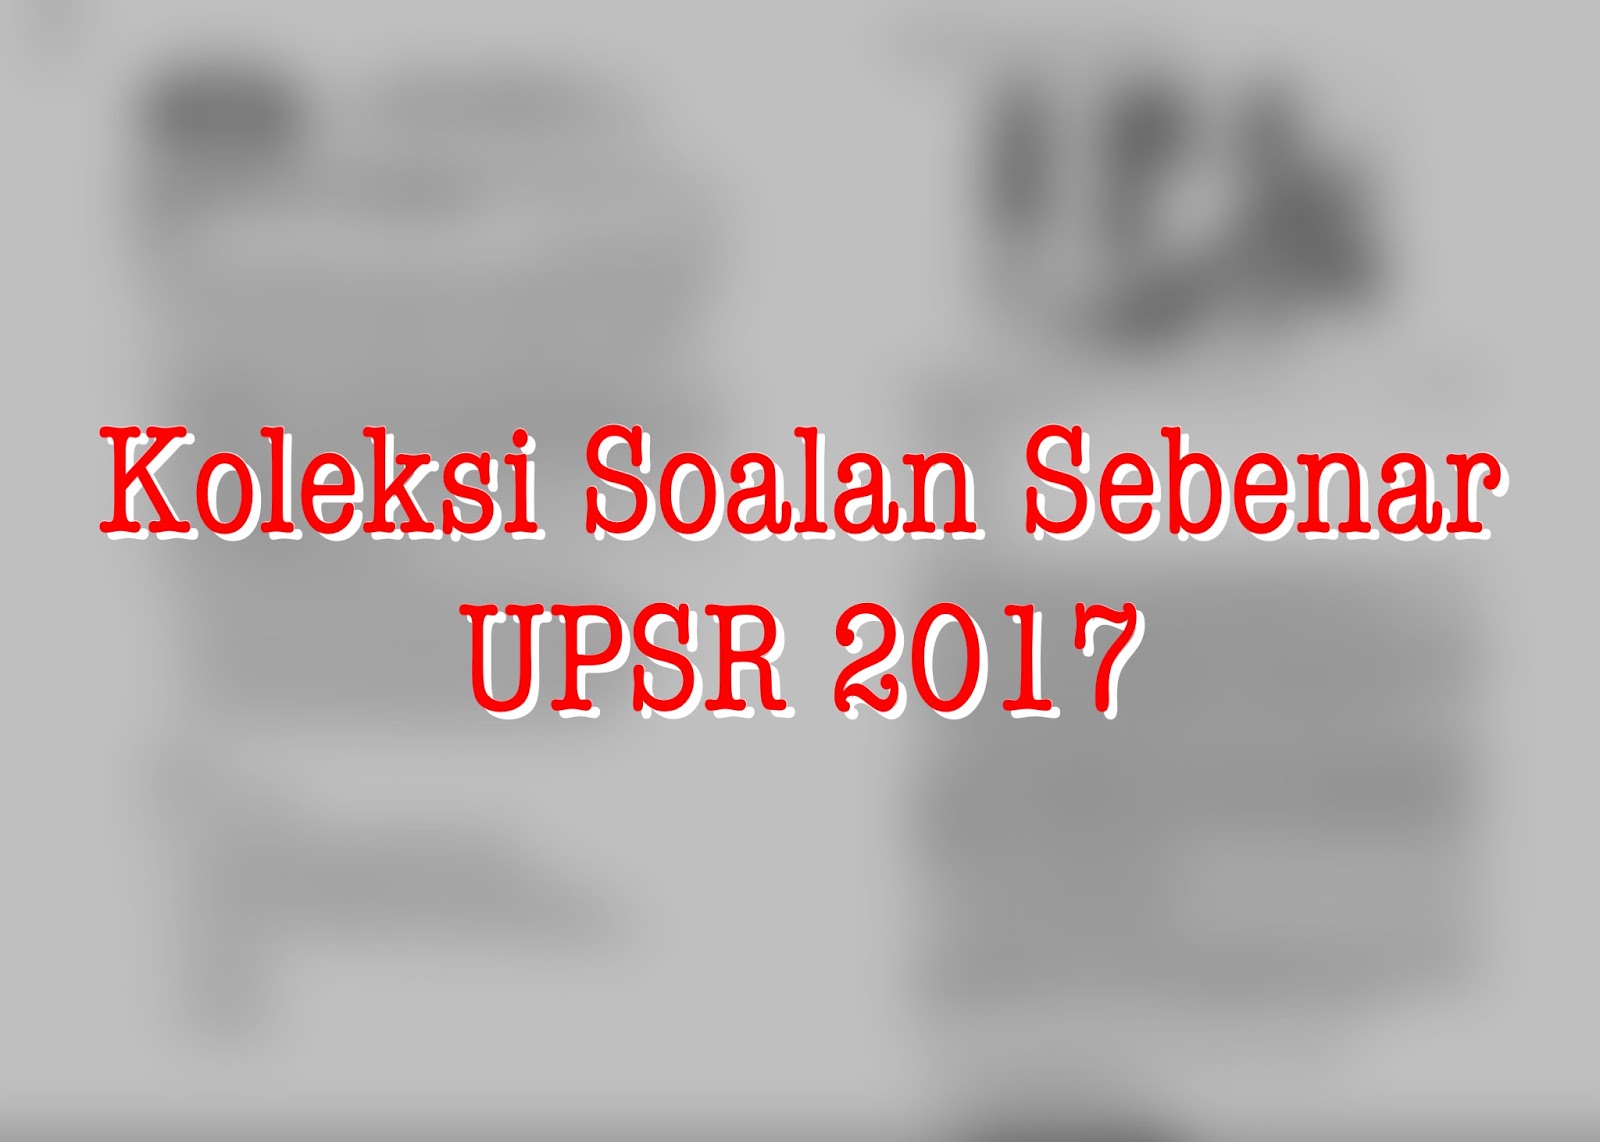 Koleksi Soalan Sebenar Upsr Tahun 2017 Media Kabar Malay